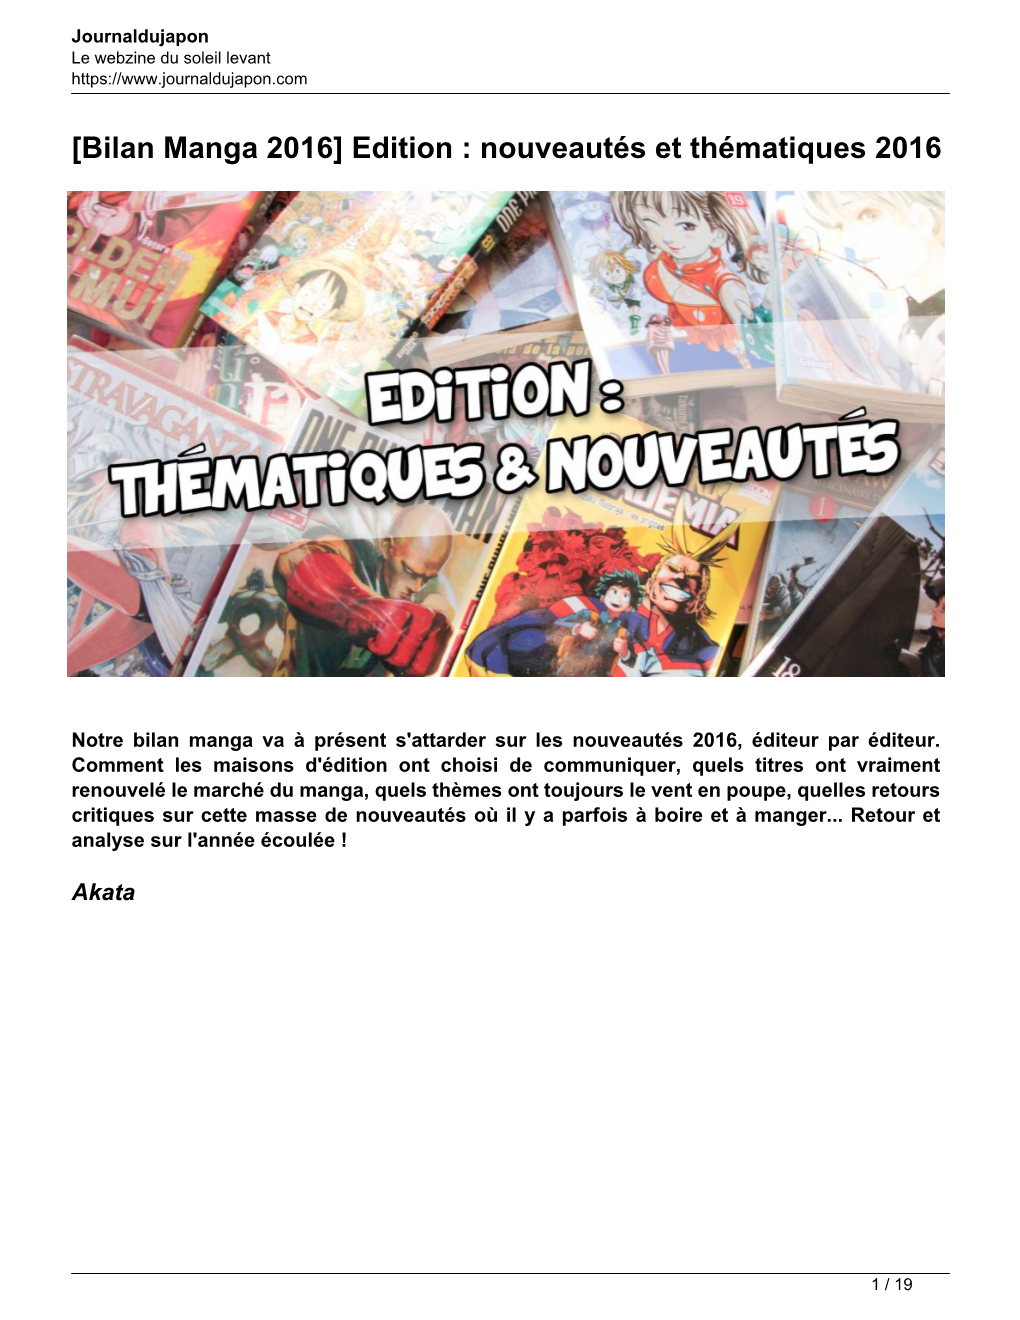 [Bilan Manga 2016] Edition : Nouveautés Et Thématiques 2016